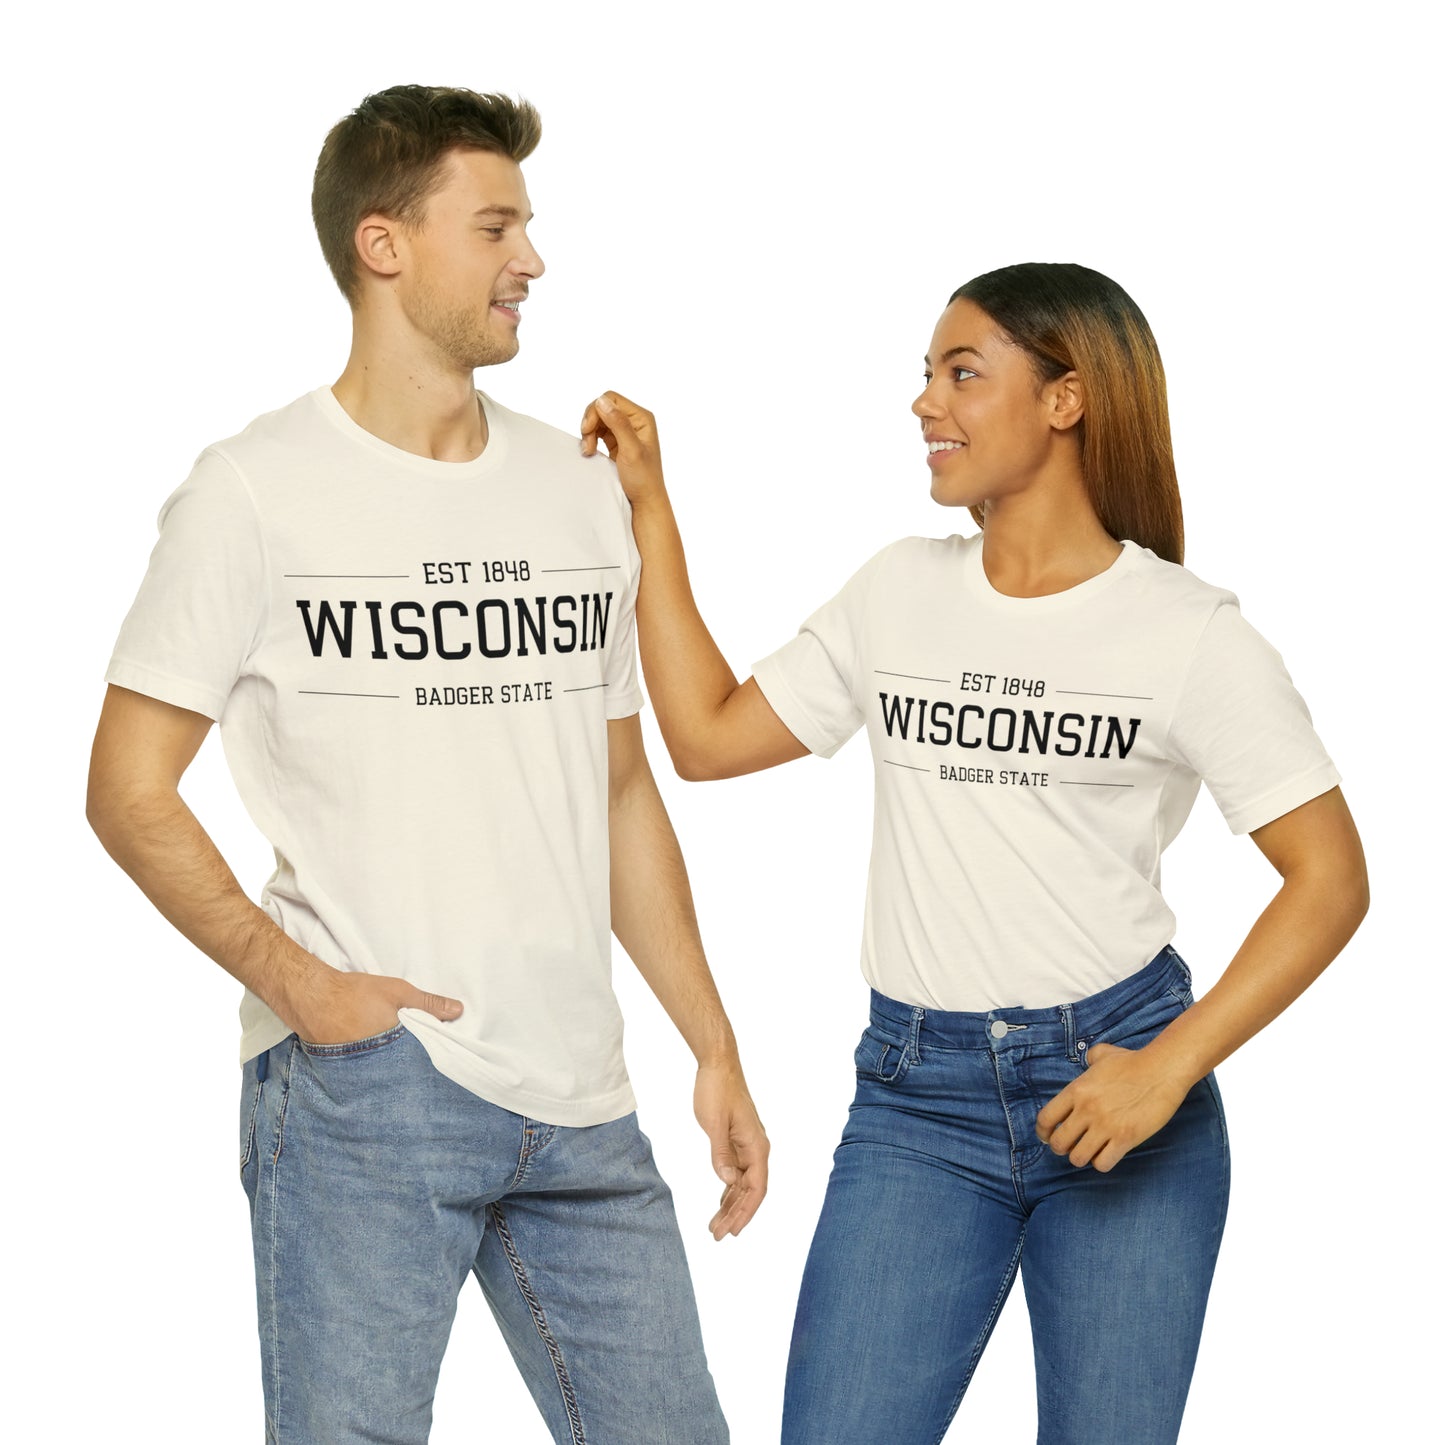 Wisconsin EST 1848